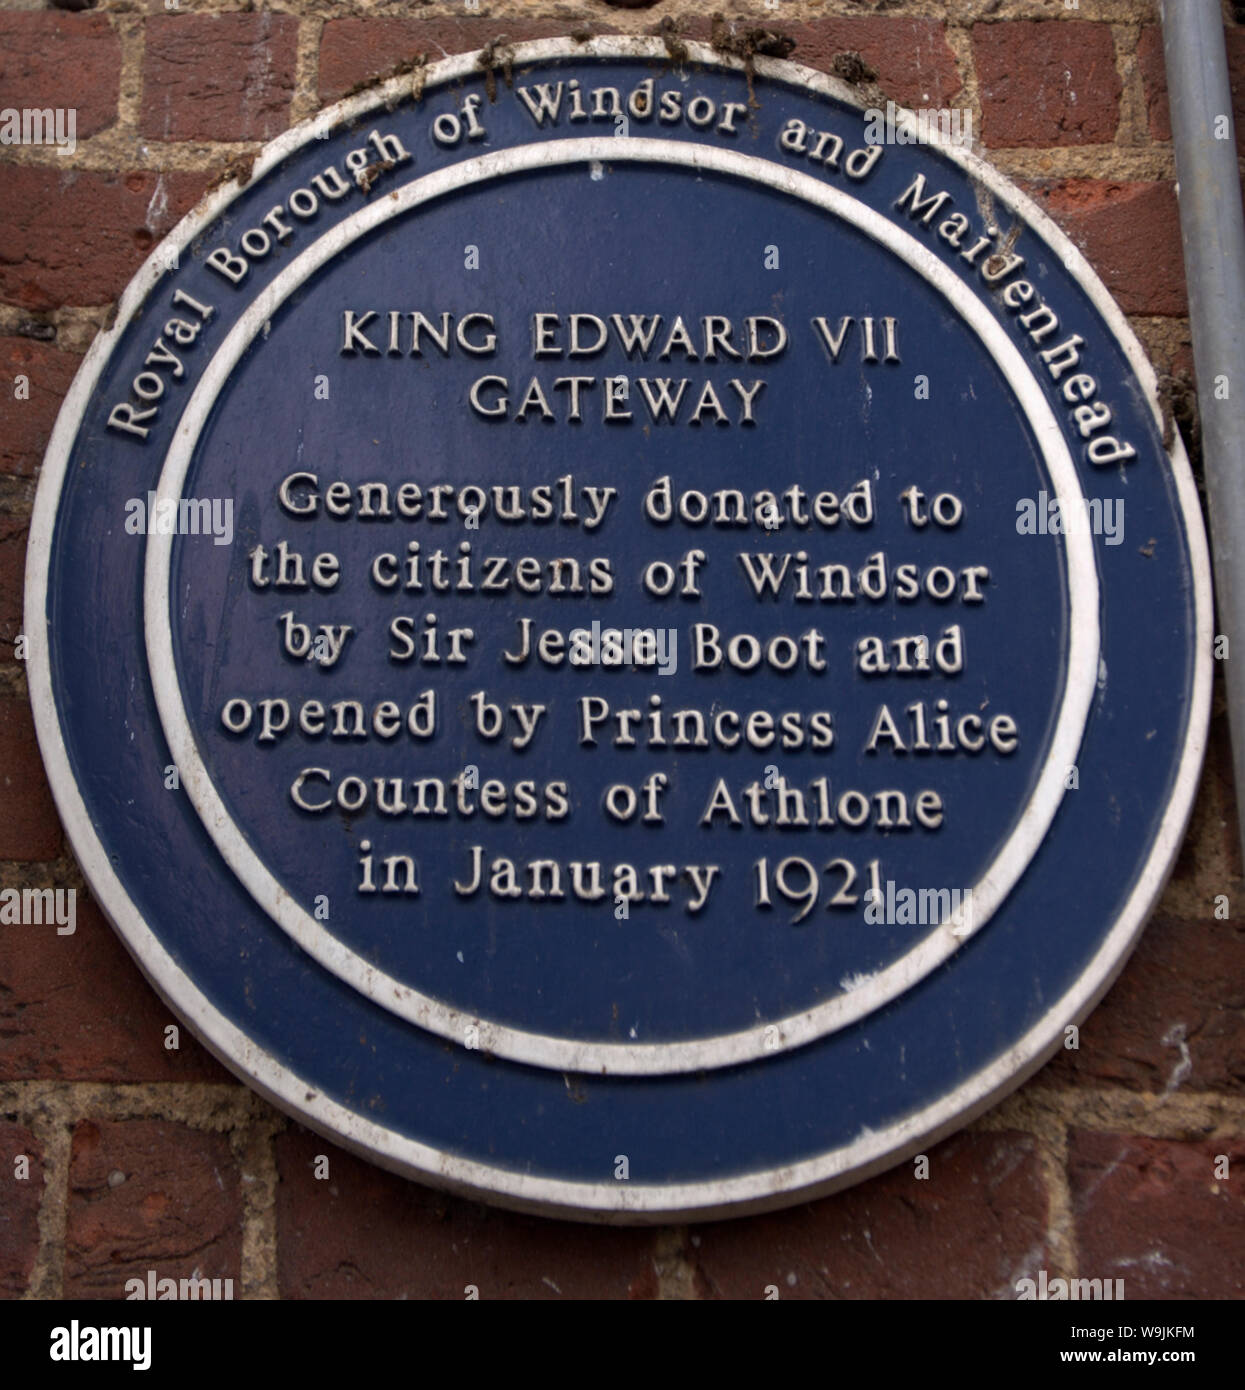 Placa observando el rey Edward VII Gateway, donación de Windsor por Sir Jesse Boot Foto de stock